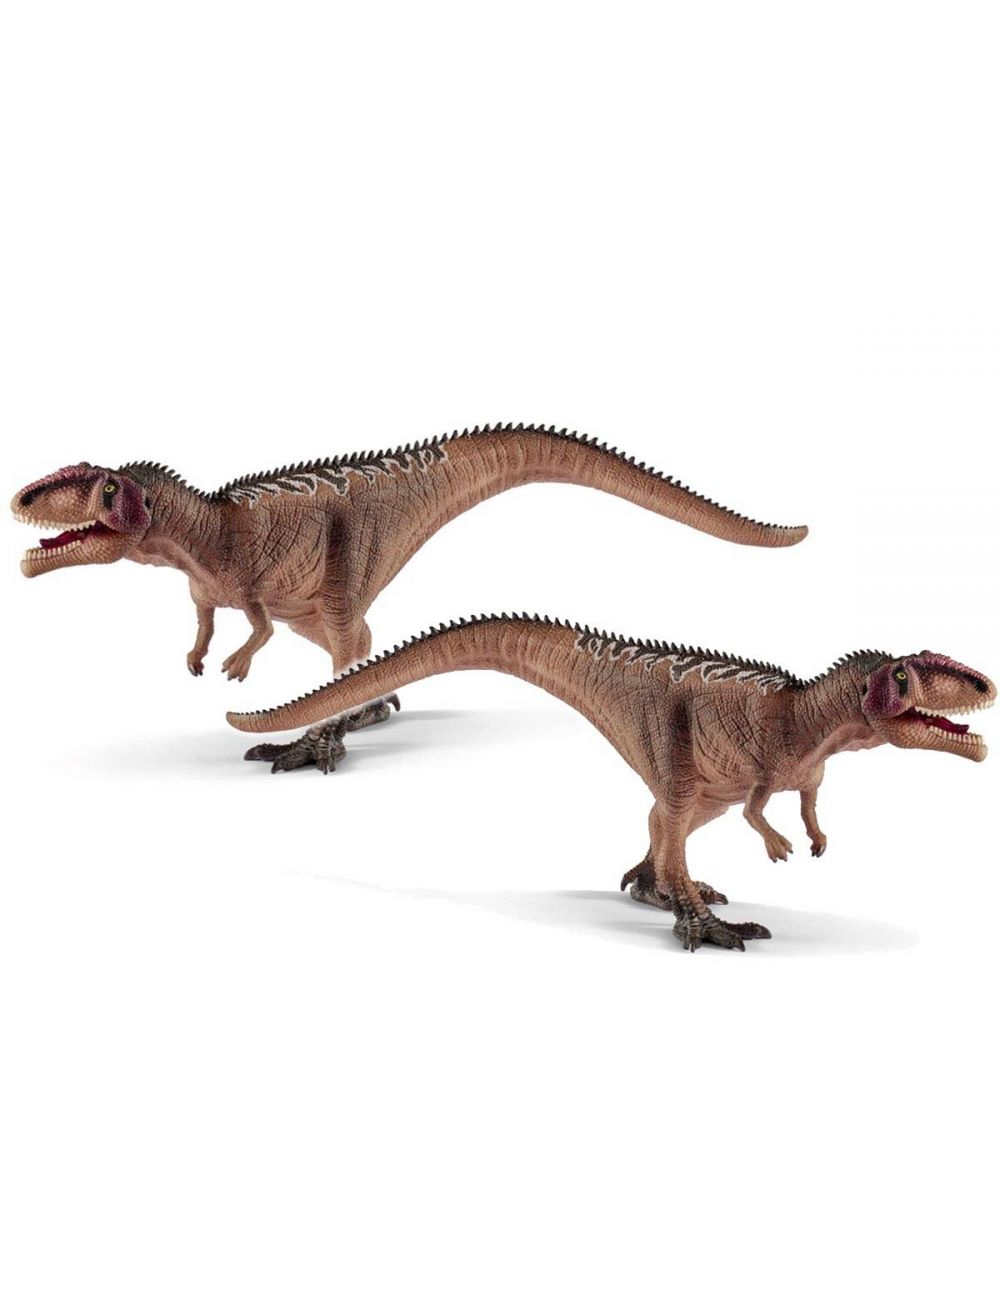 Schleich 15017 Figurka Gigantosaurus Juvenile Dinosaurs